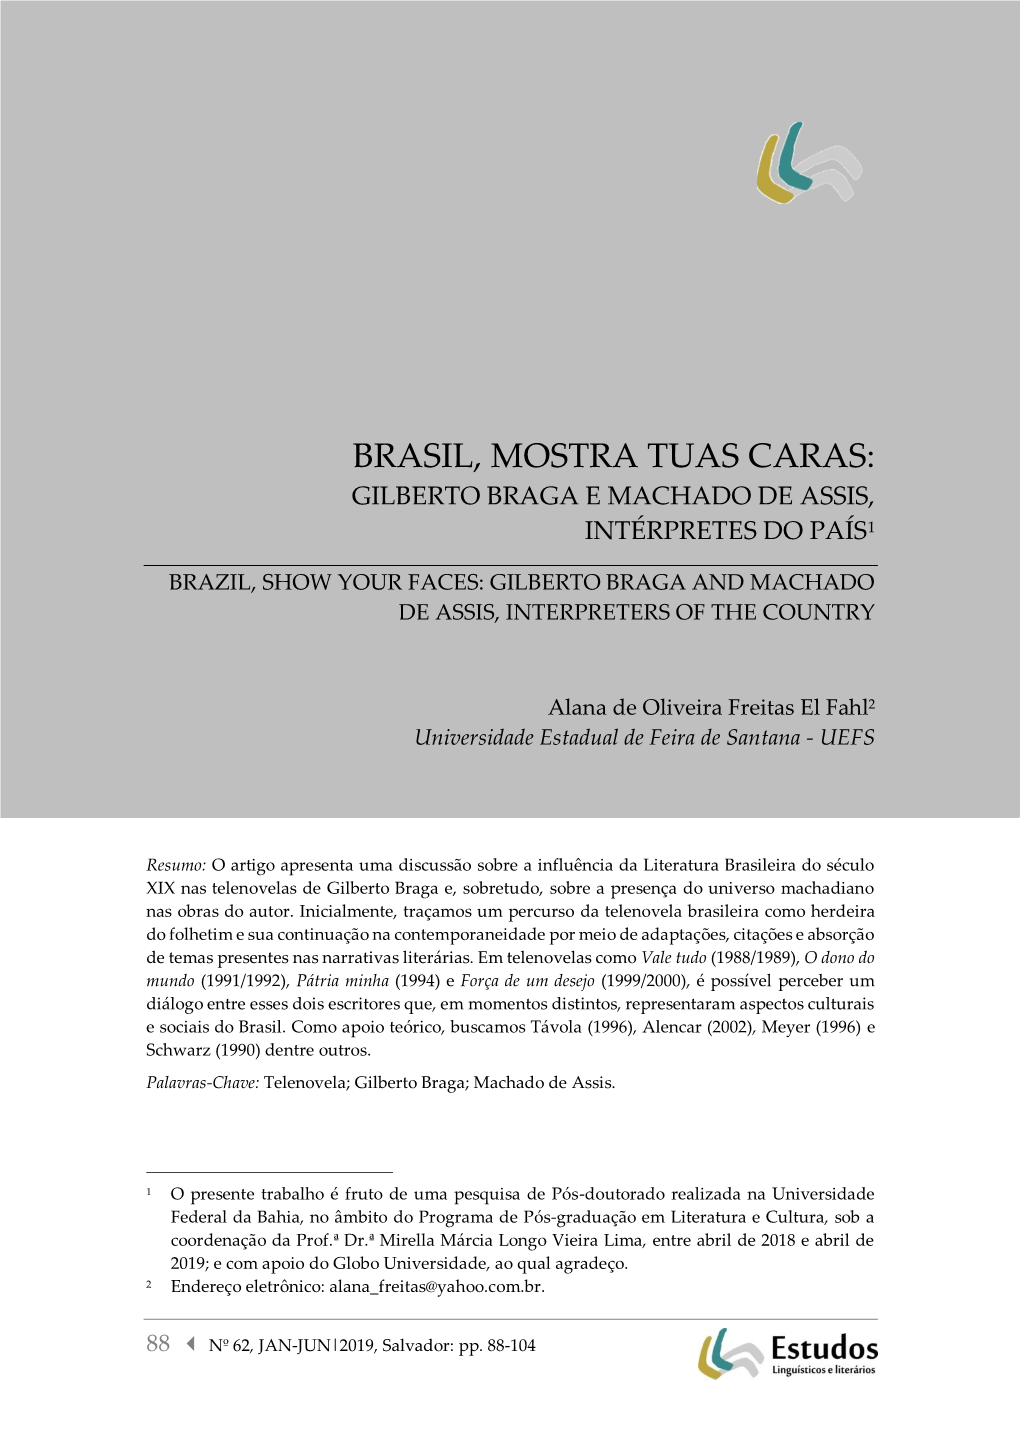 Brasil, Mostra Tuas Caras: Gilberto Braga E Machado De Assis, Intérpretes Do País1